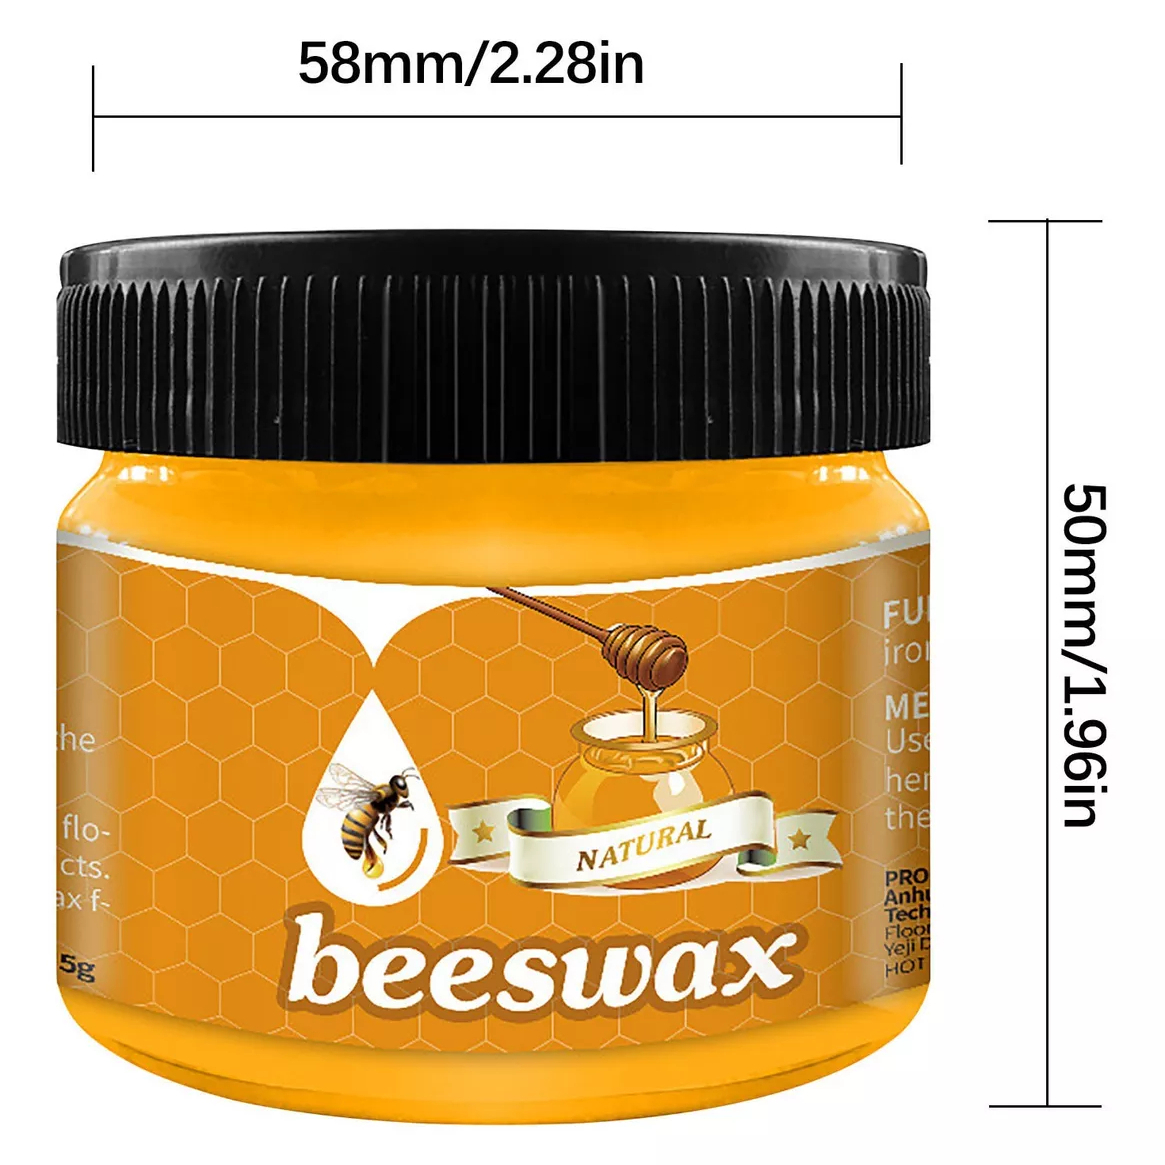 BeeWax